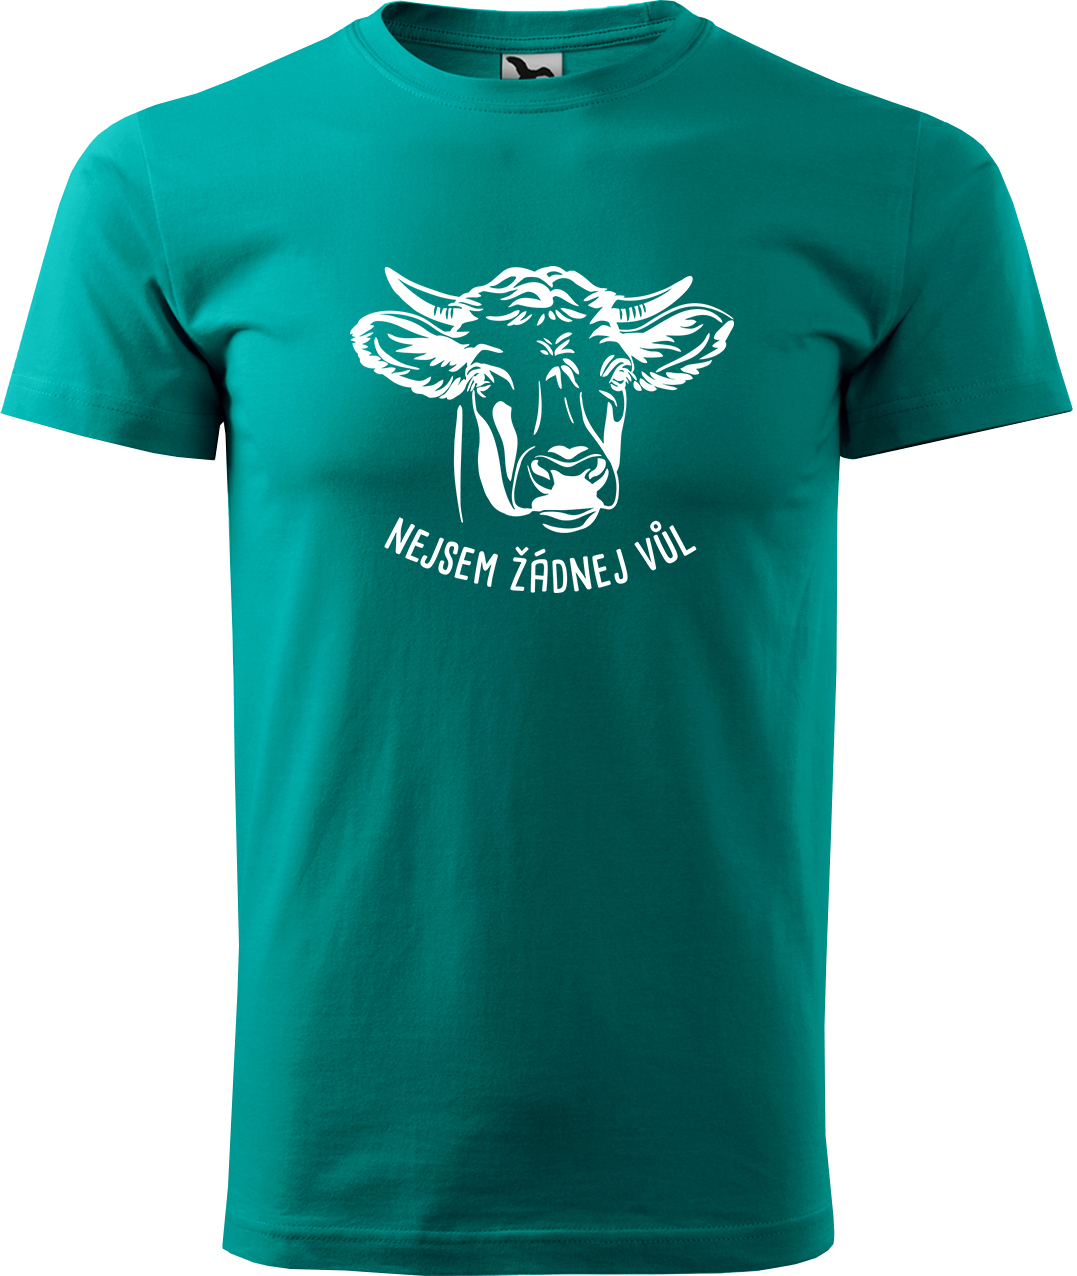 Pánské tričko s krávou - Nejsem žádnej vůl Velikost: M, Barva: Emerald (19), Střih: pánský